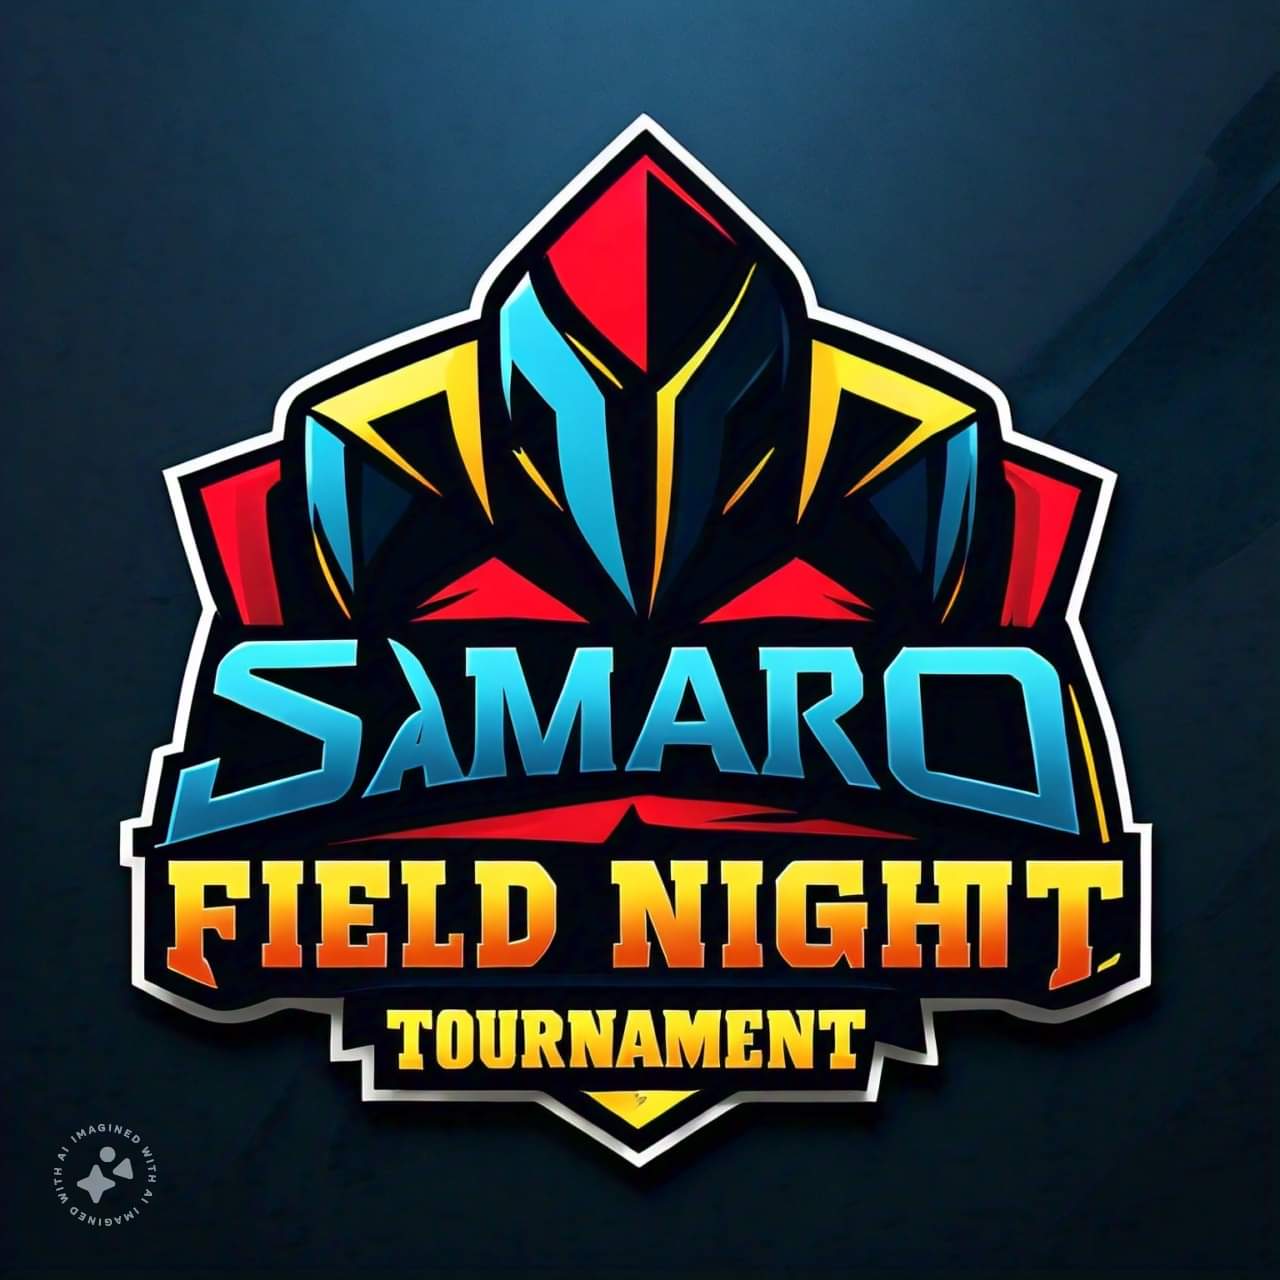 Samaro City Field Night Tournament 